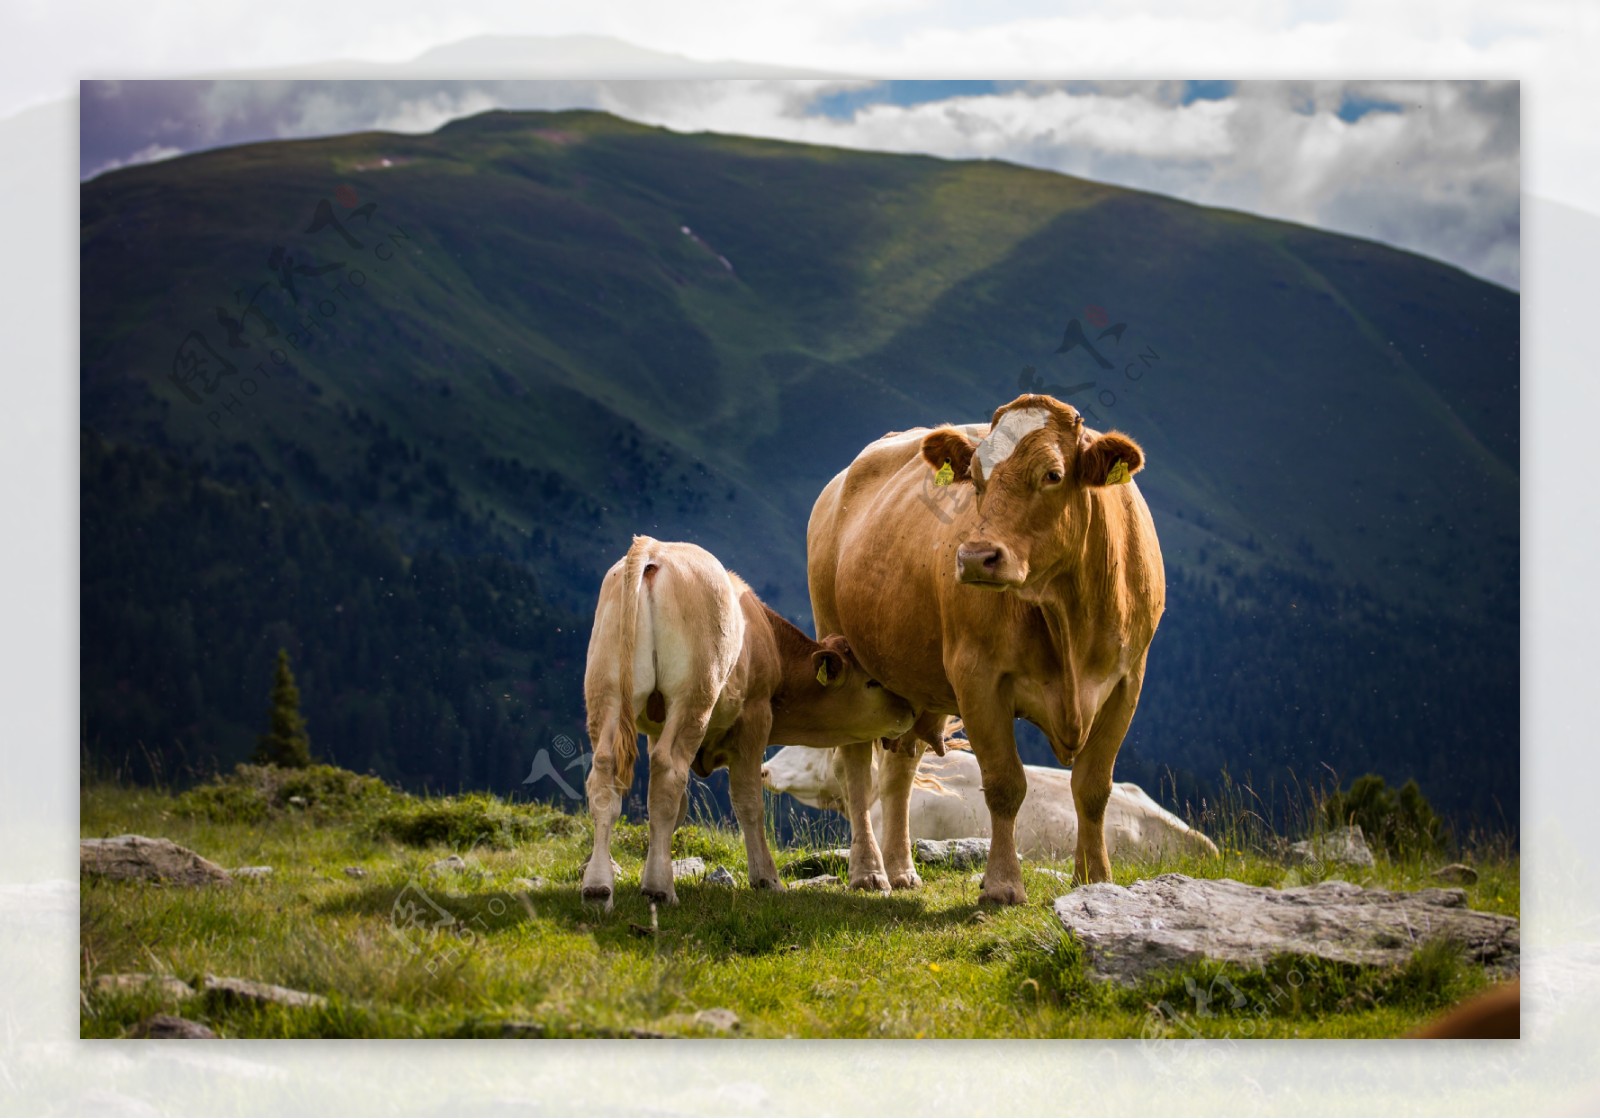 山间牧场上吃奶的牛犊